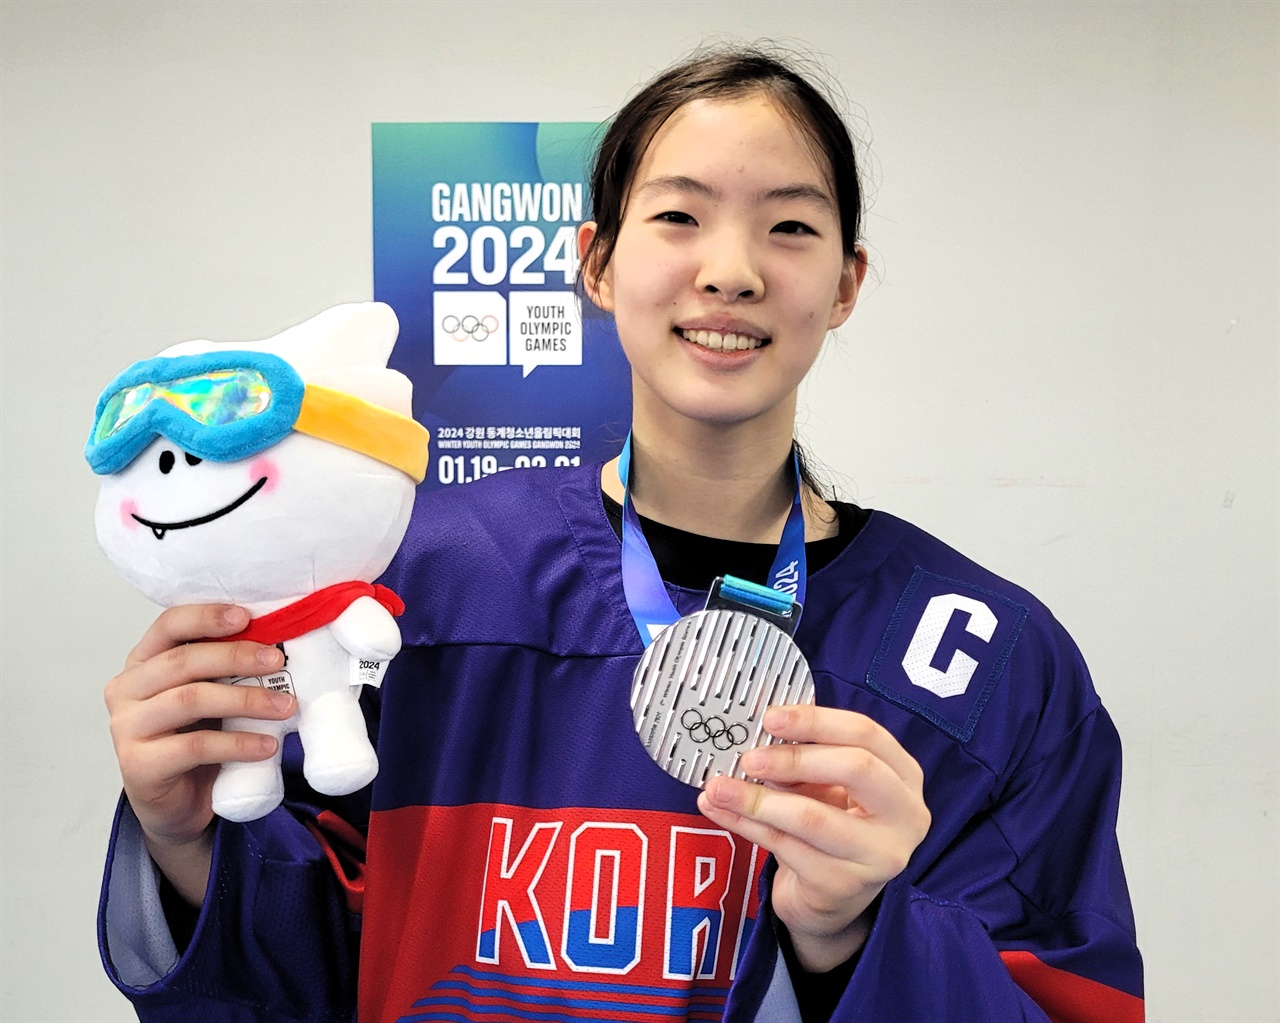   25일 2024 강원 동계 청소년 올림픽 여자 3 온 3 아이스하키에서 은메달을 획득한 박주연 선수가 메달과 함께 포즈를 짓고 있다.